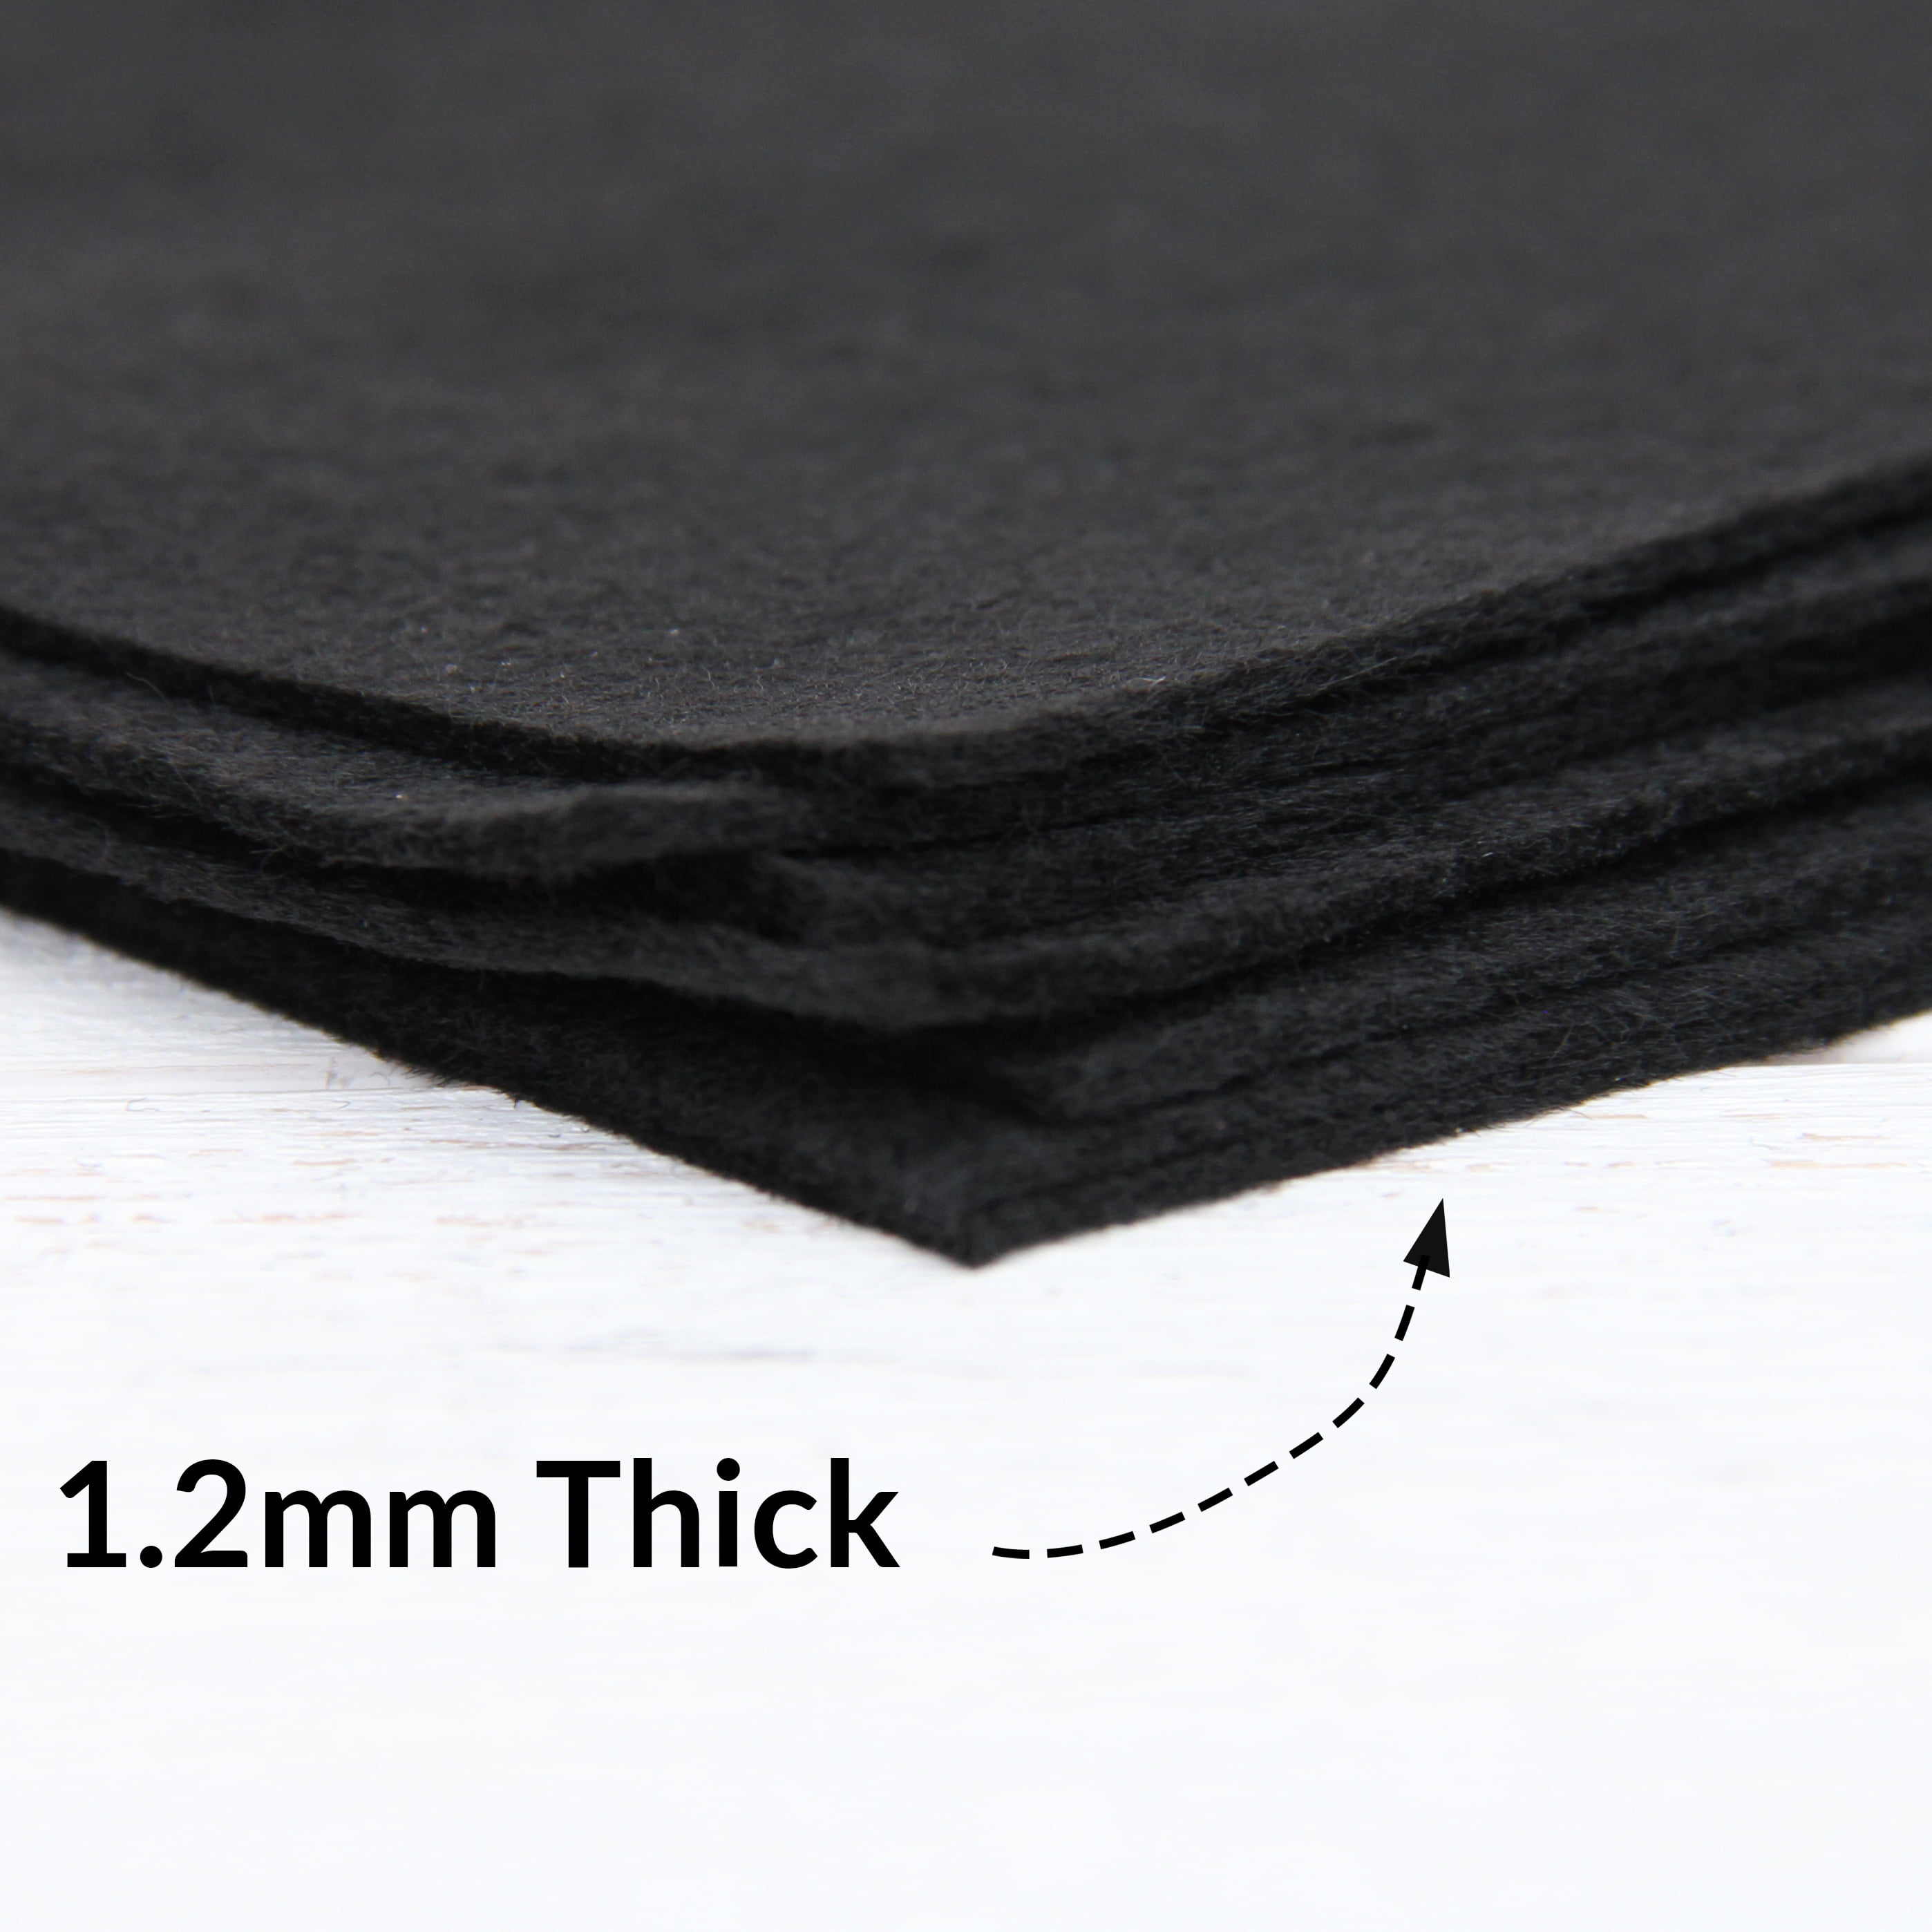 Threadart Premium Felt Roll - 12 x 10yd - Black, Soft Wool-Like Feel, 1.2mm Thick for DIY Crafts, Sewing, Crafting Projects